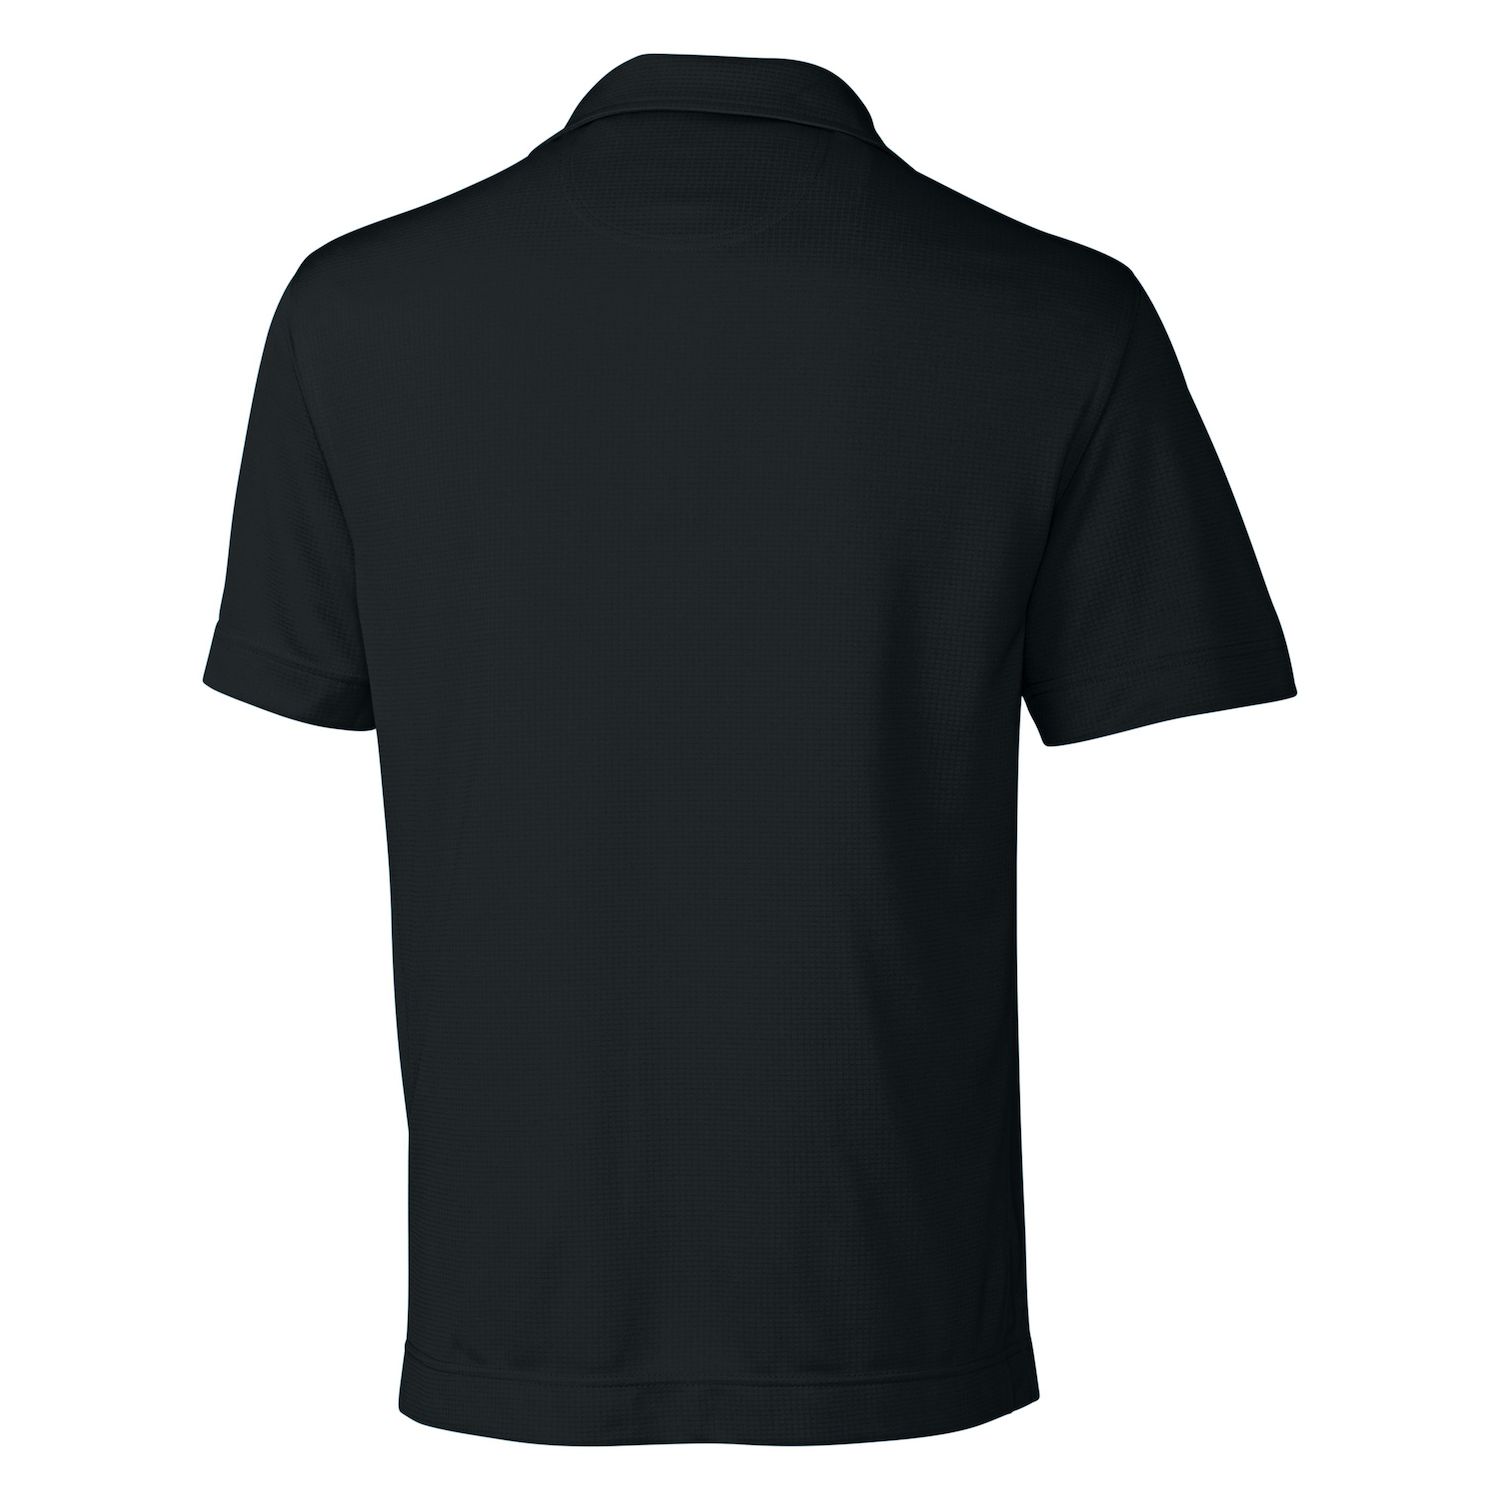 Однотонная мужская футболка-поло с текстурой CB Drytec Жанр Cutter & Buck, темно-синий текстурированная однотонная мужская футболка поло cb drytec genre cutter